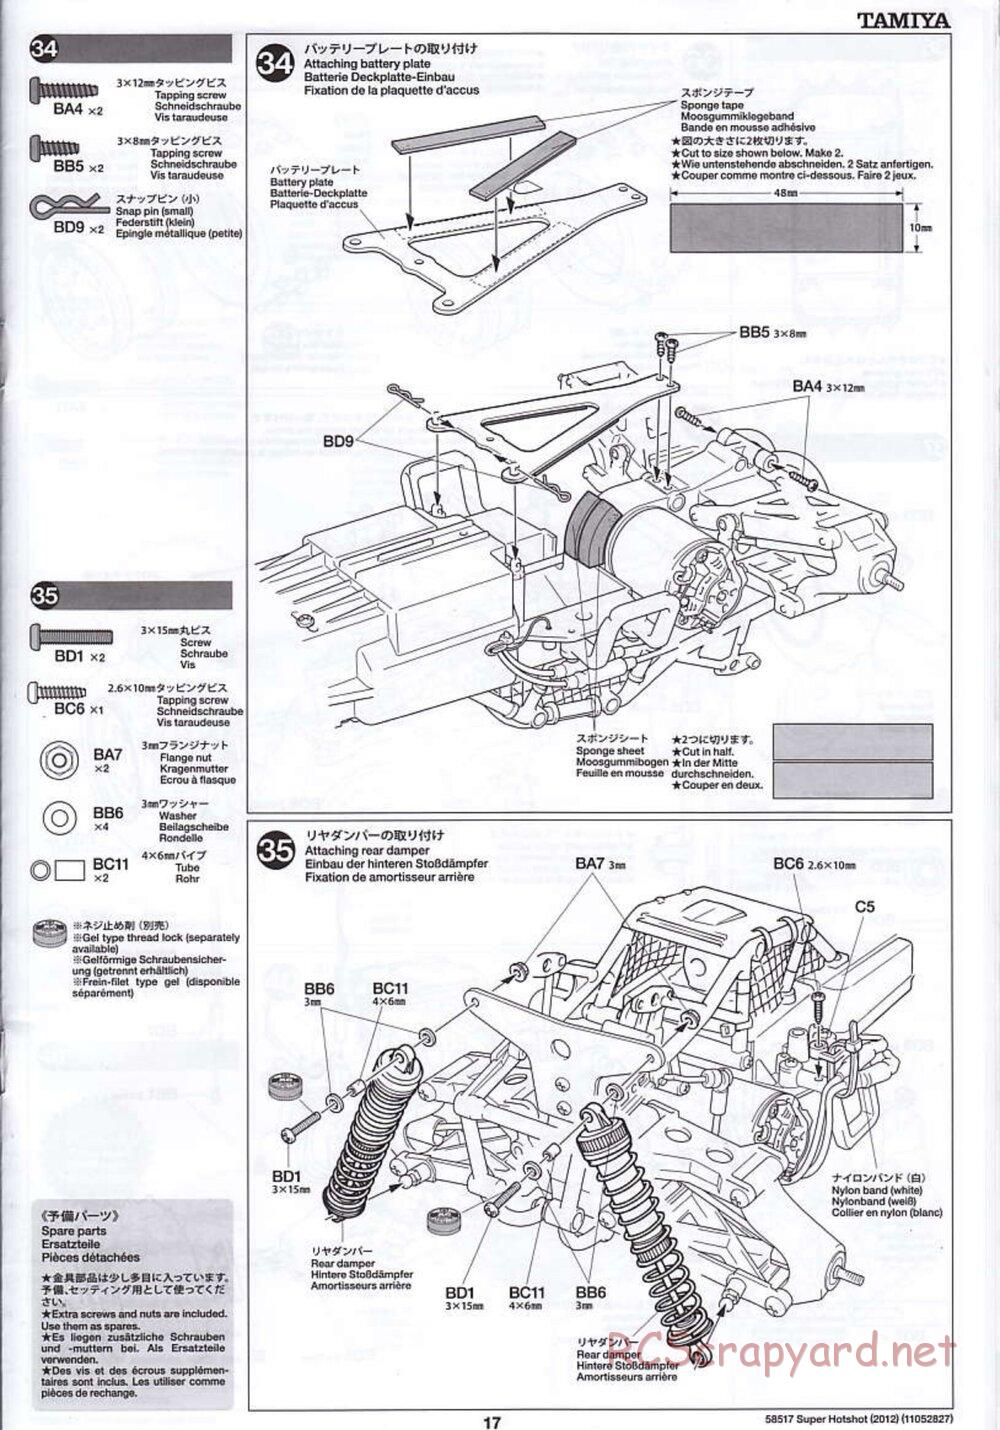 Tamiya - Super Hotshot 2012 - HS Chassis - Manual - Page 17